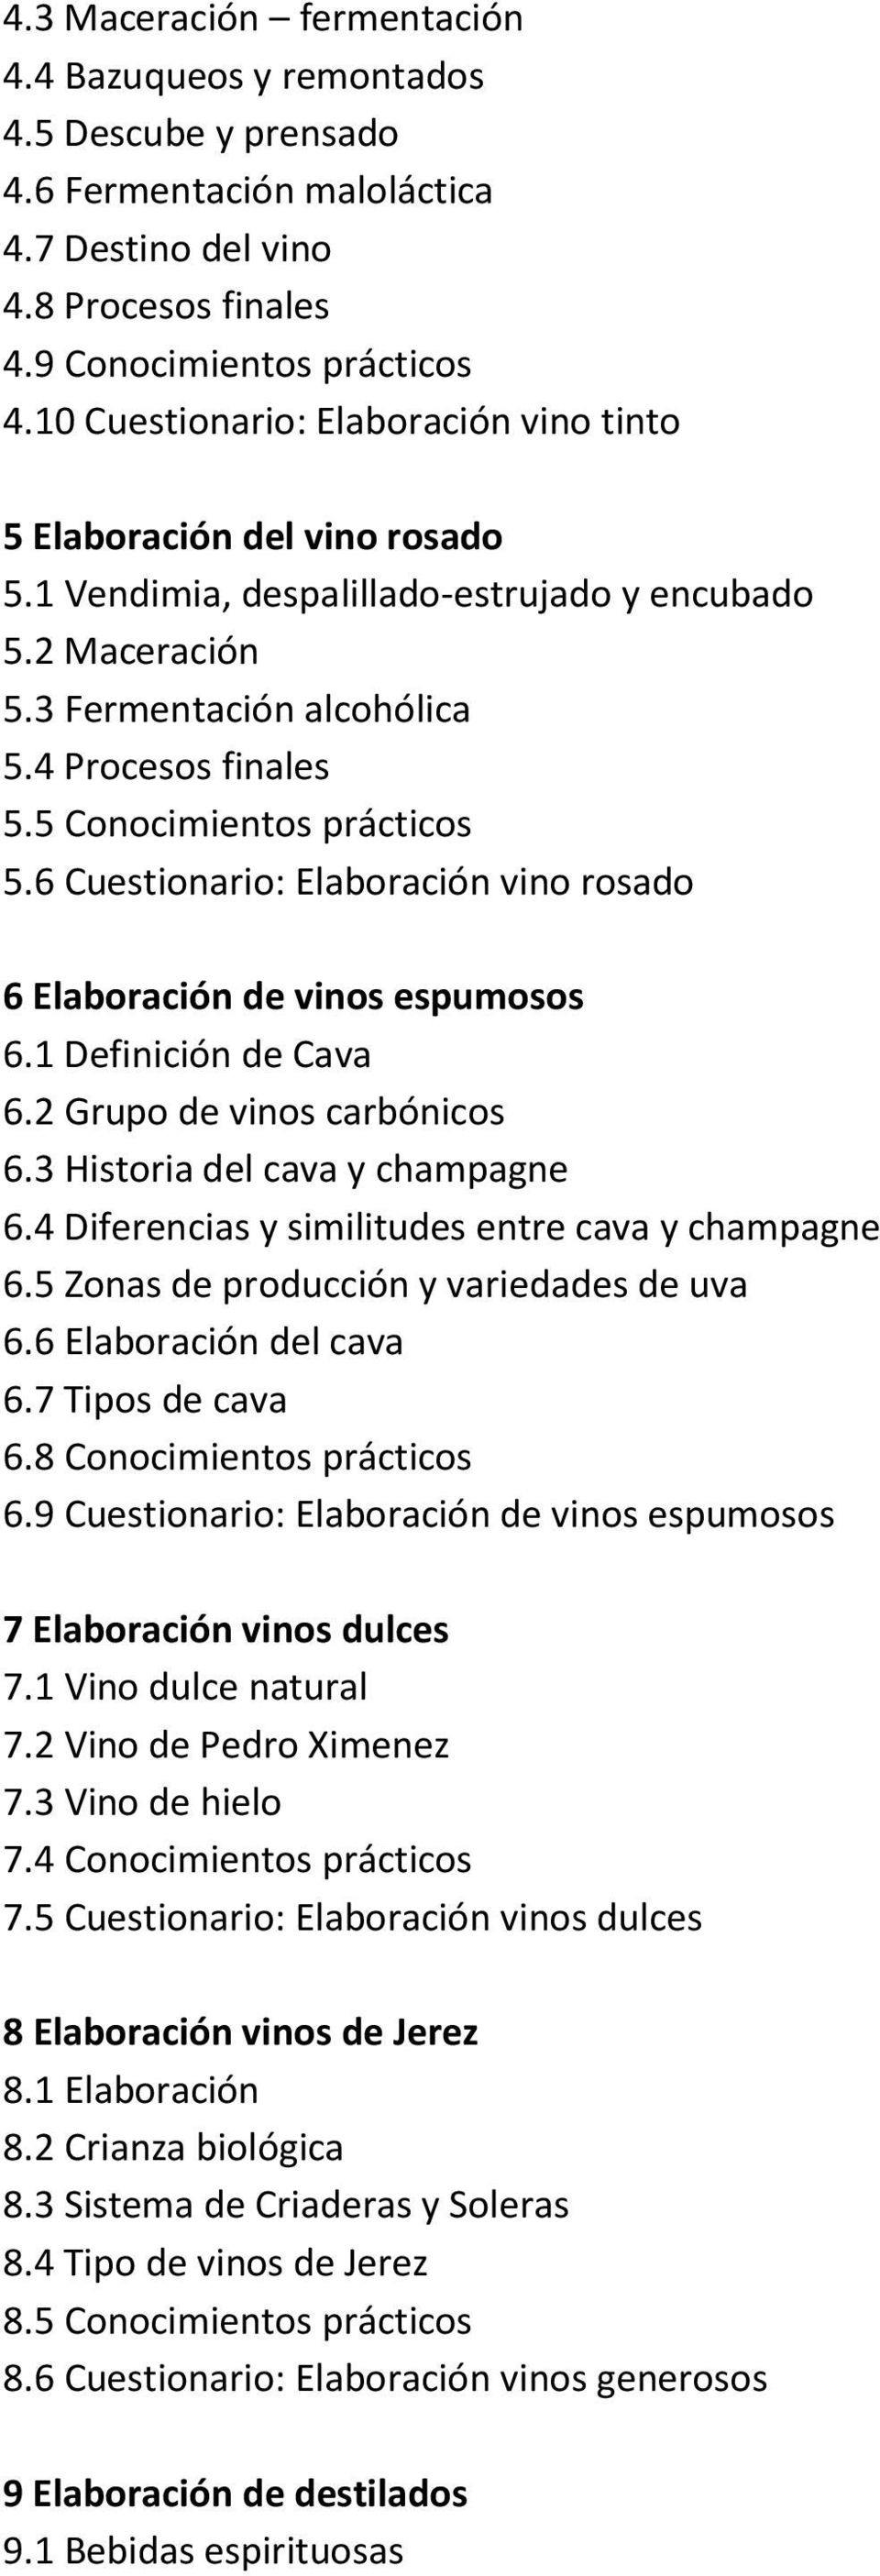 5 Conocimientos prácticos 5.6 Cuestionario: Elaboración vino rosado 6 Elaboración de vinos espumosos 6.1 Definición de Cava 6.2 Grupo de vinos carbónicos 6.3 Historia del cava y champagne 6.